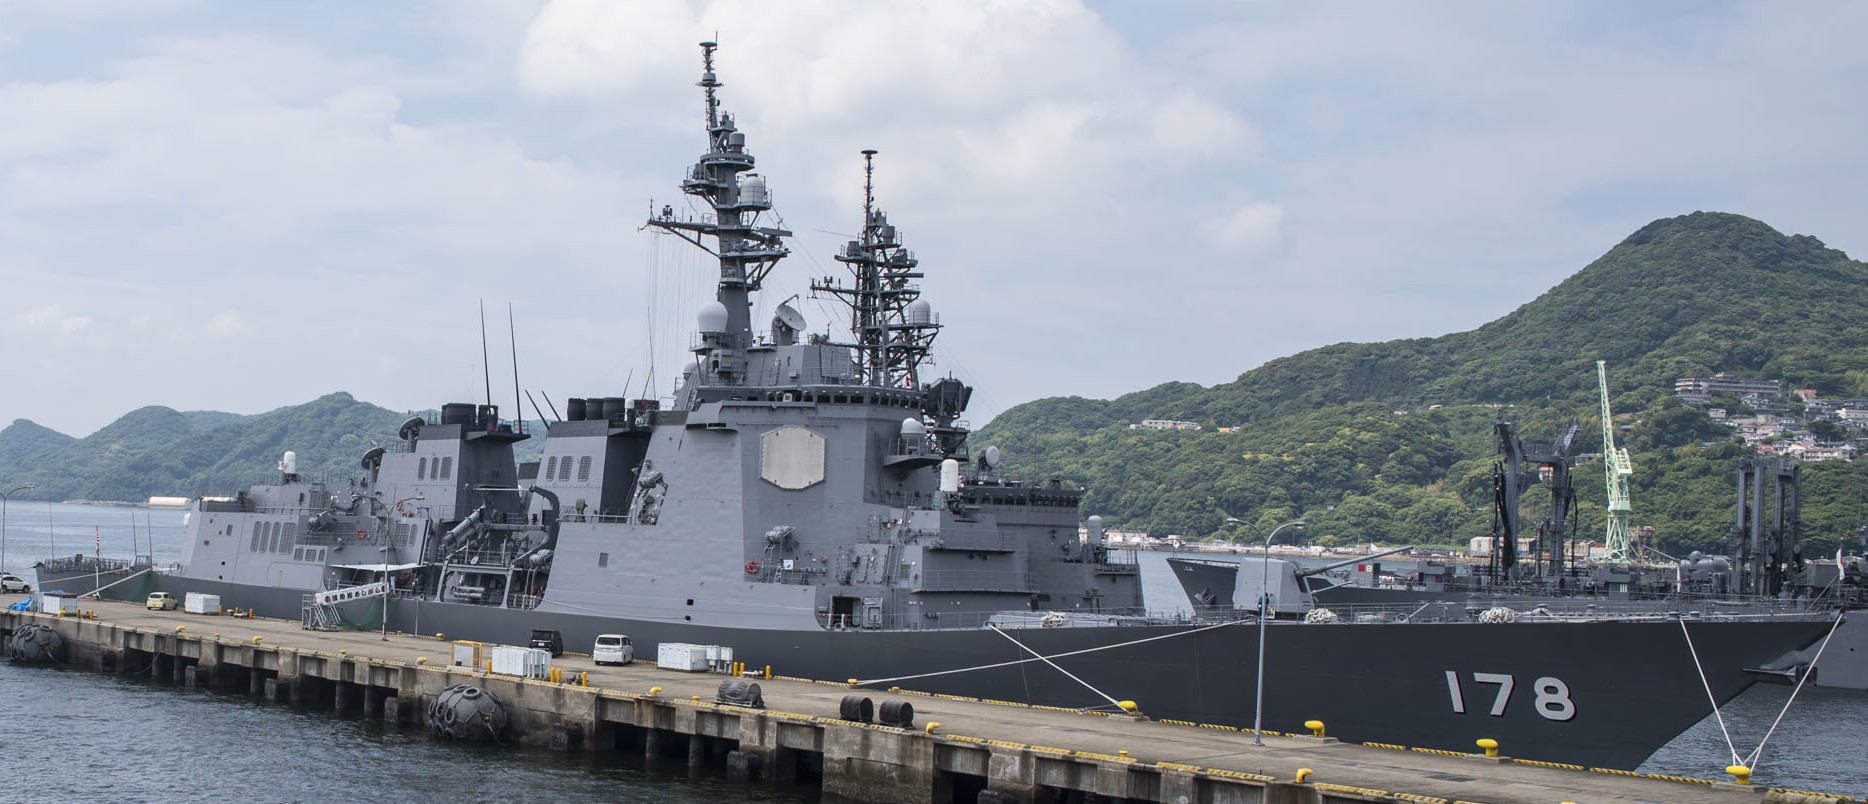 ddg-178 jds ashigara atago class guided missile destroyer japan maritime self defense force jmsdf 32